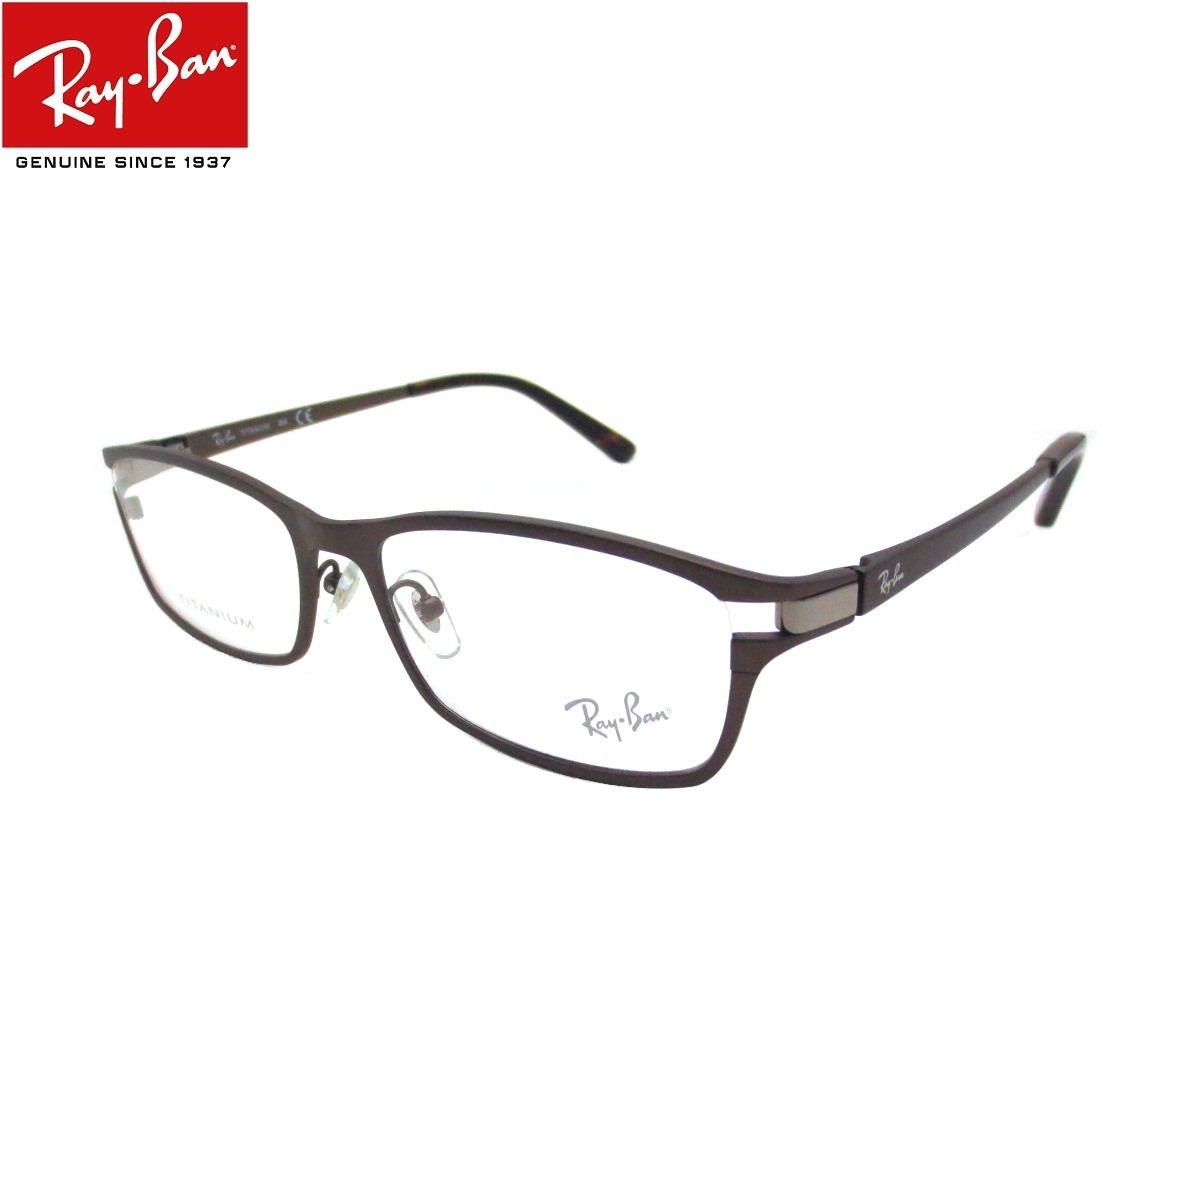 あす楽対応 正規商品販売店 レイバンブルーライトカット 老眼鏡 UVカット 超撥水 防汚コート付 +1.00 +1.25 +1.50 +1.75 +2.00 +2.25 +2.50 +2.75 +3.00 +3.50 +4.00 ブルーライトカット老眼鏡 メガネ 中間度数 かっこいいシニアグラス Ray-Ban チタンメガネ RX8727D 1020（54） メンズ レディース 男女兼用 UVカット・ブルーライトカットレンズPC・スマホ 【正規メーカー保証書付】【あす楽対応】